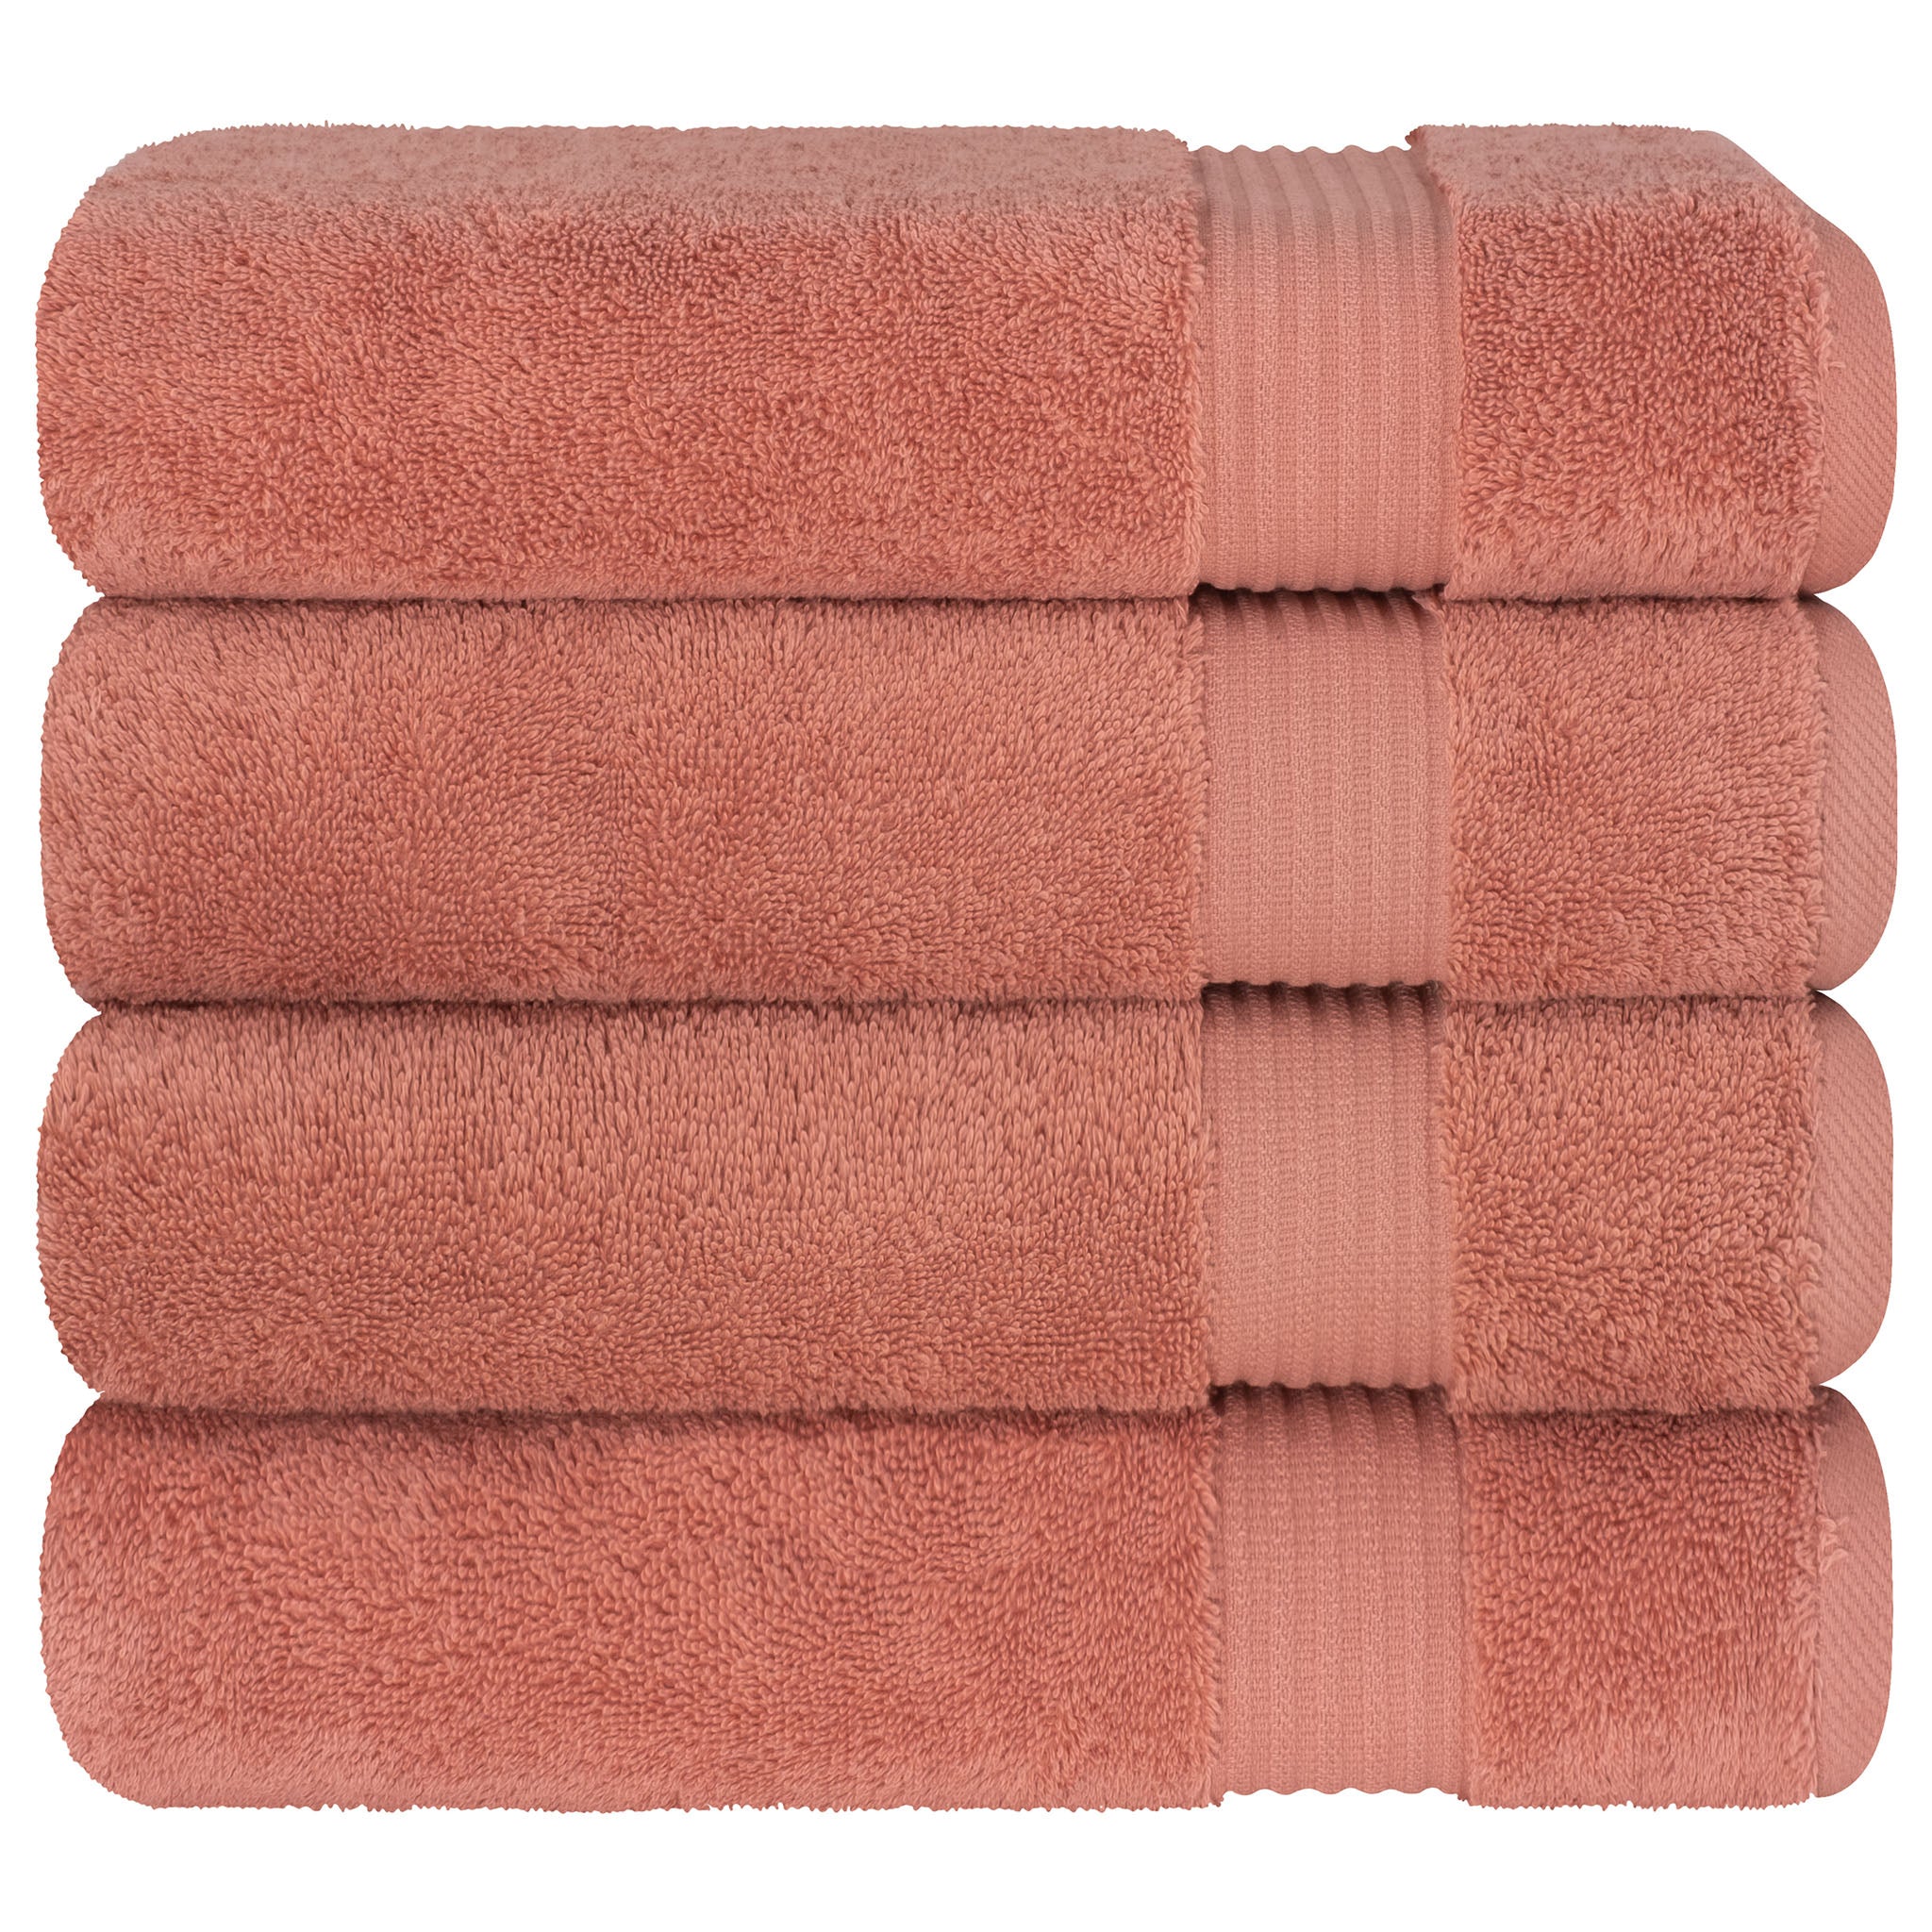 American Soft Linen Bekos 100% Cotton Turkish Towels, 4 Piece Bath Towel Set -coral-06